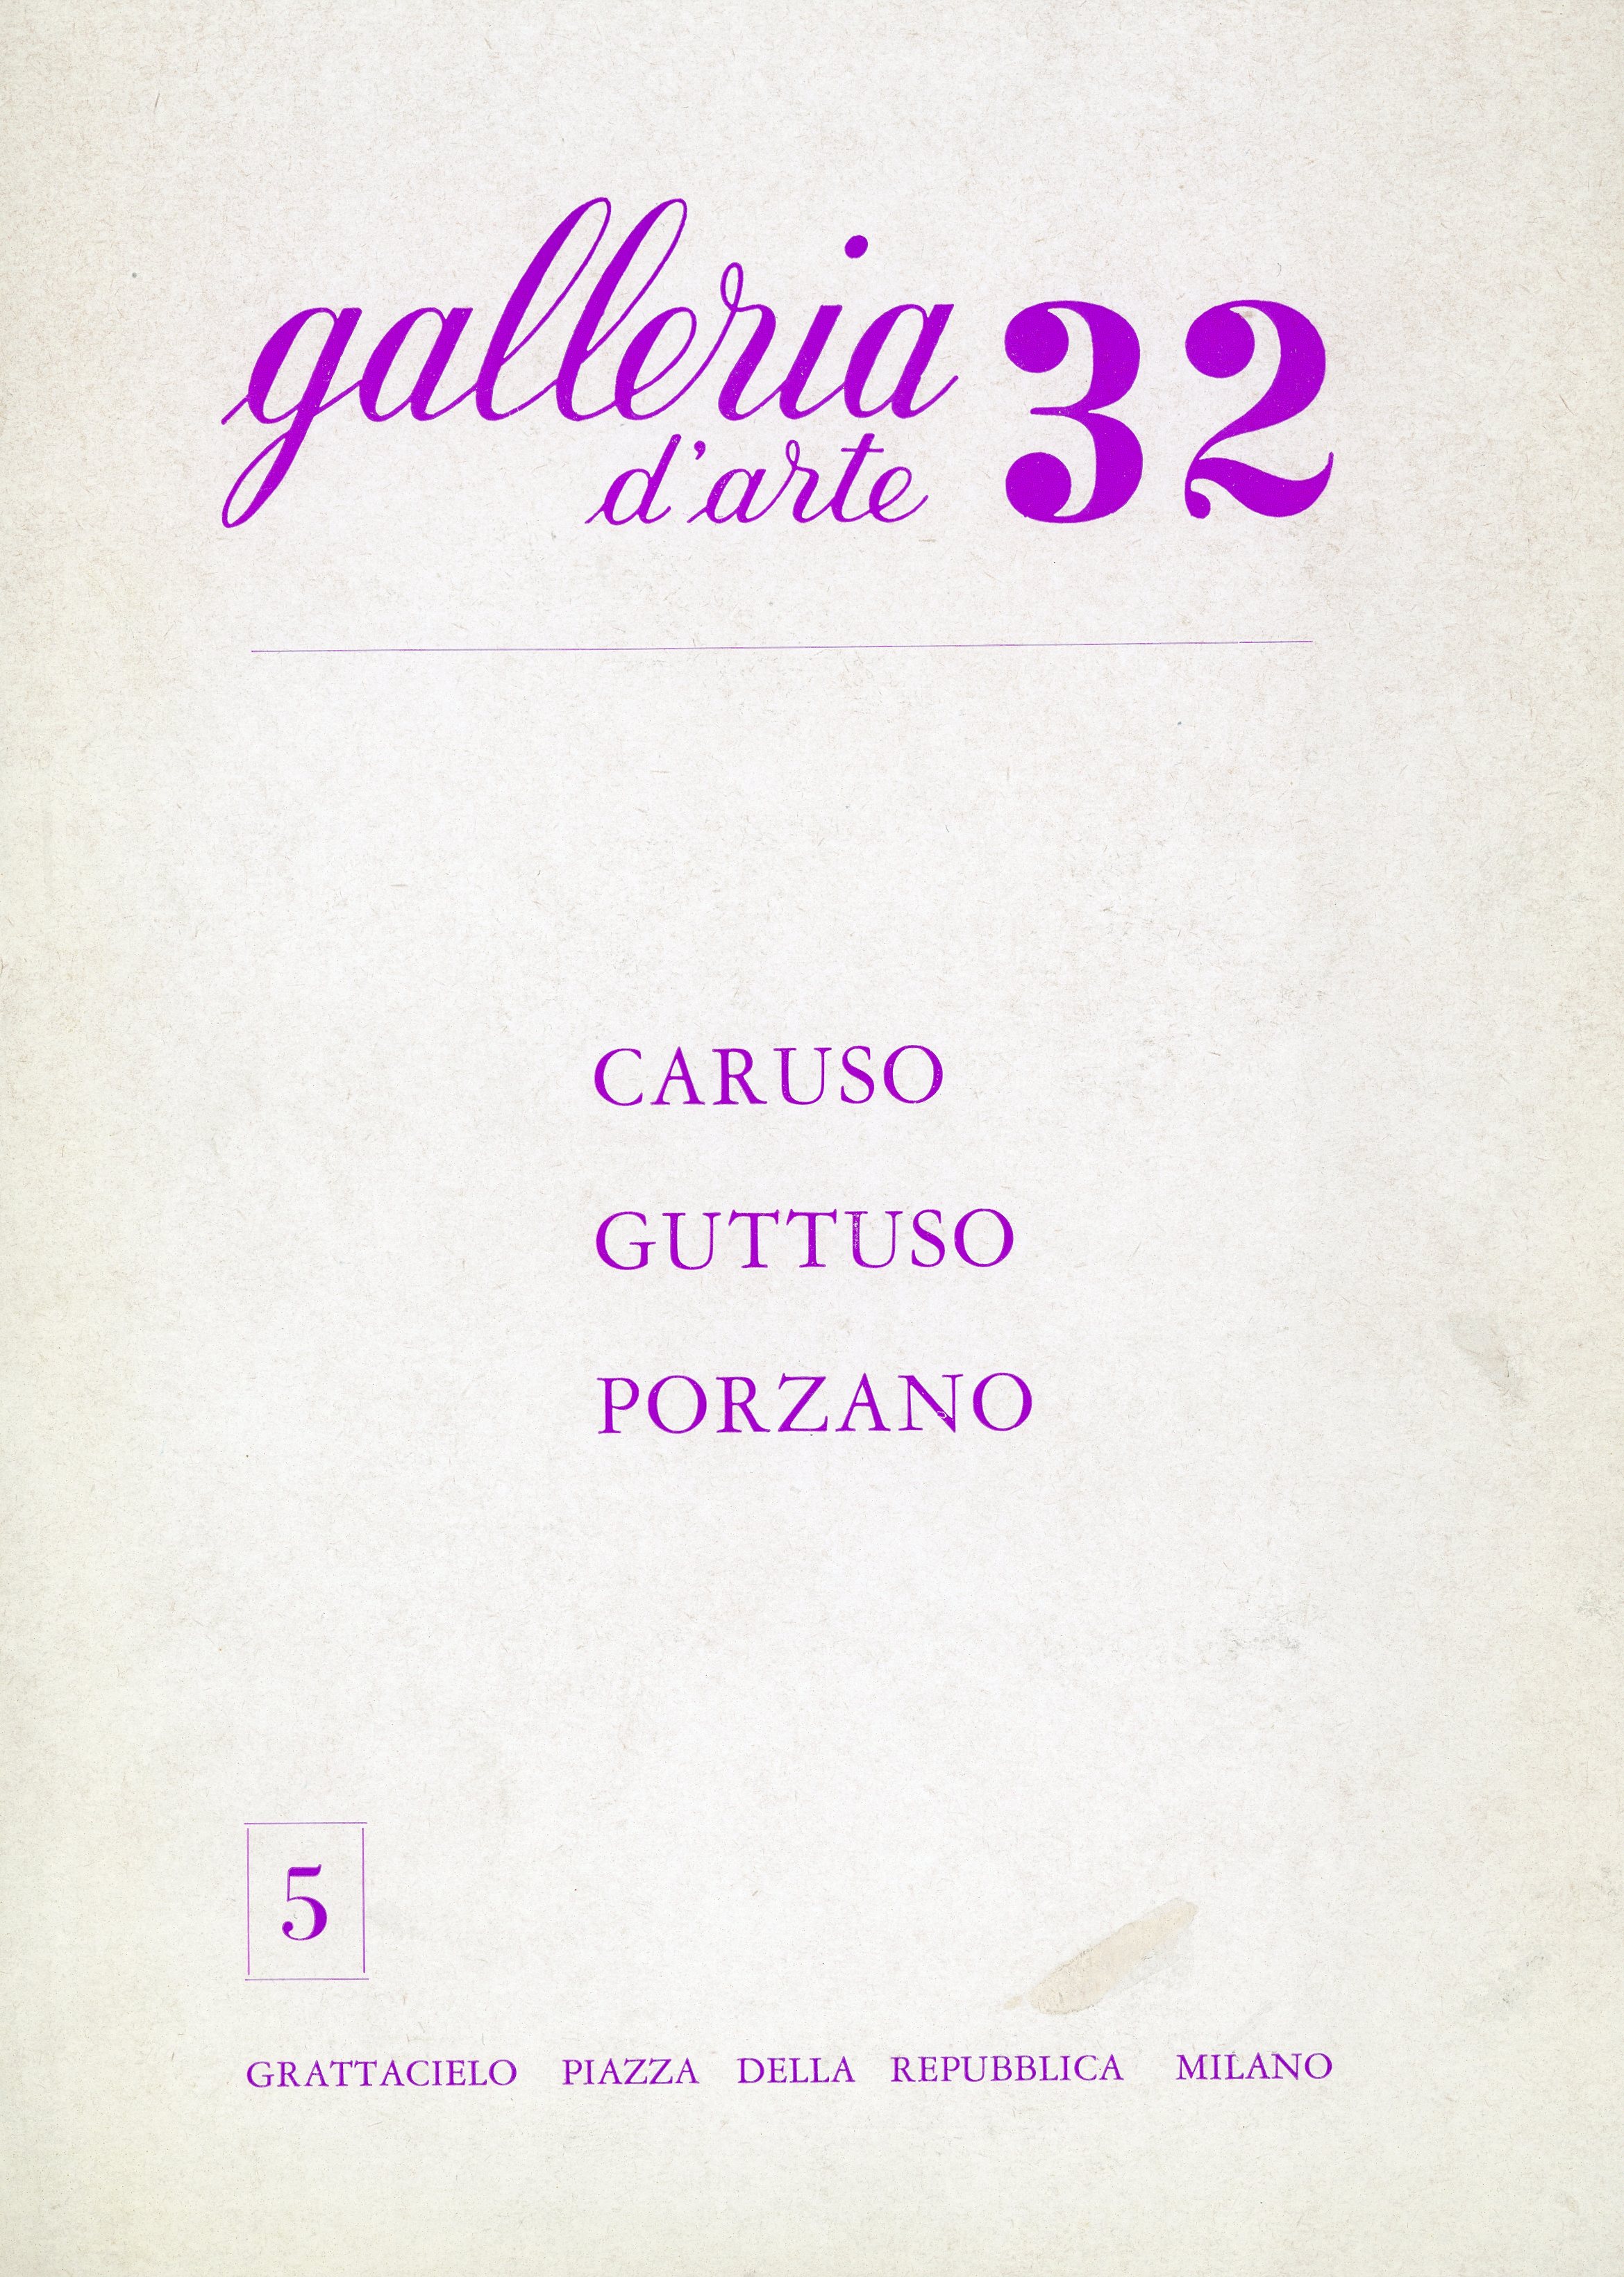 1964-02 Galleria 32 - Bruno Caruso_01.jpg